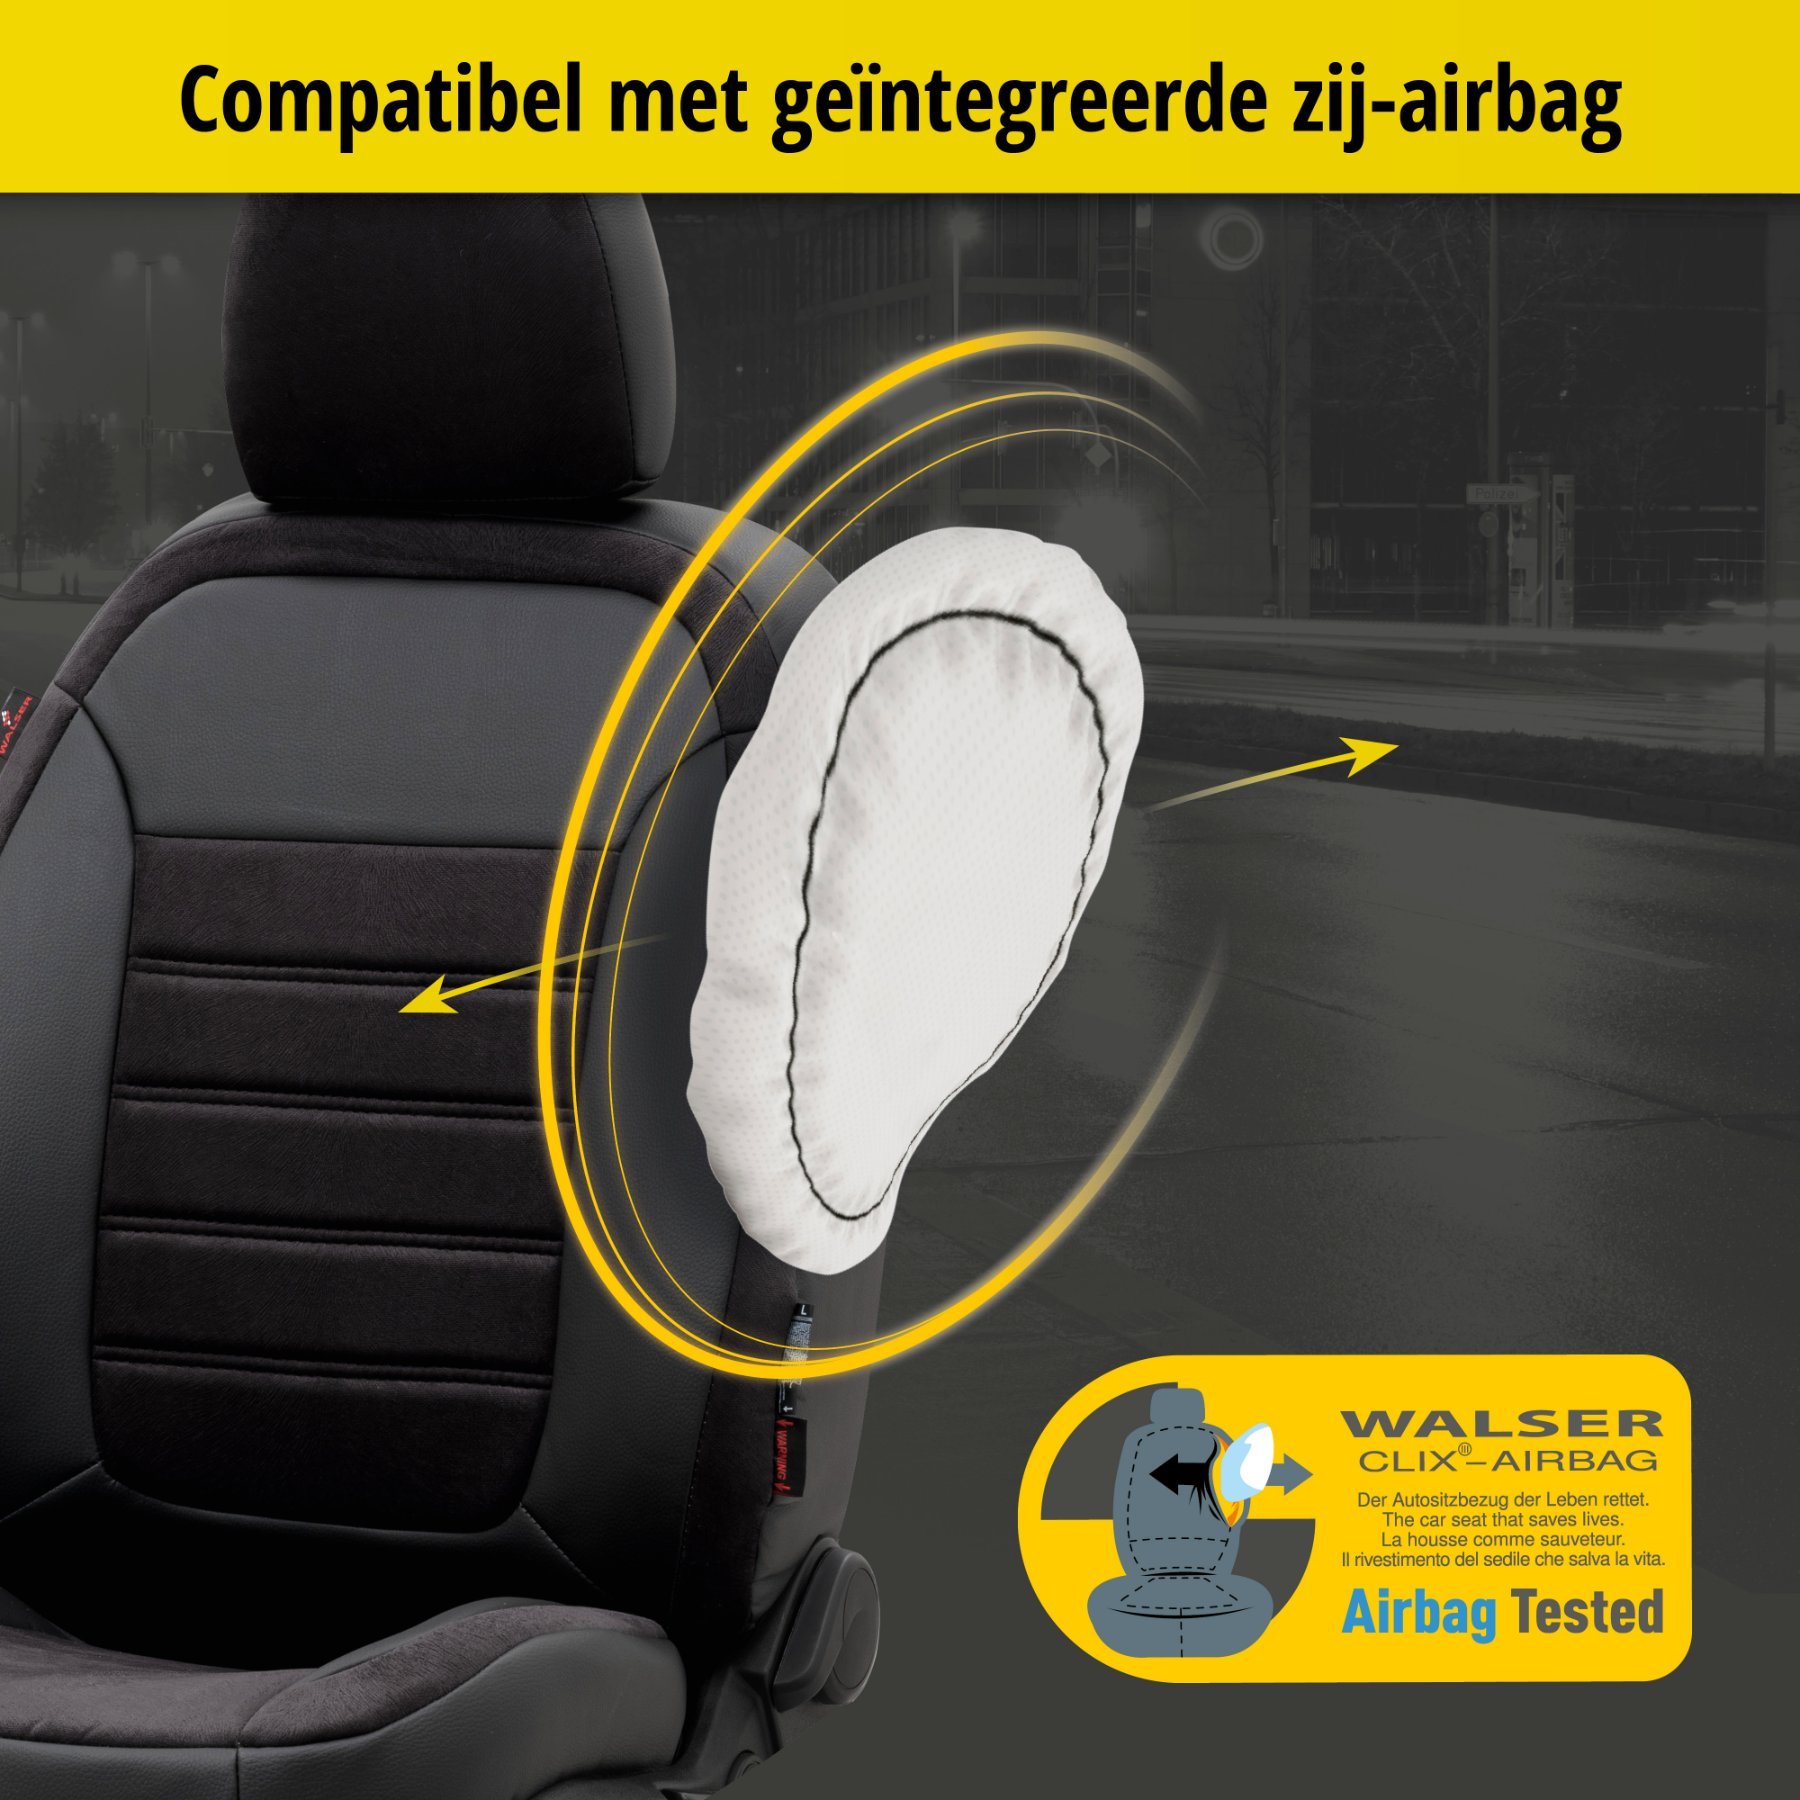 Auto stoelbekleding Bari geschikt voor VW Transporter/Caravelle VI 04/2015-Vandaag, 2 enkele zetelhoezen voor standard zetels